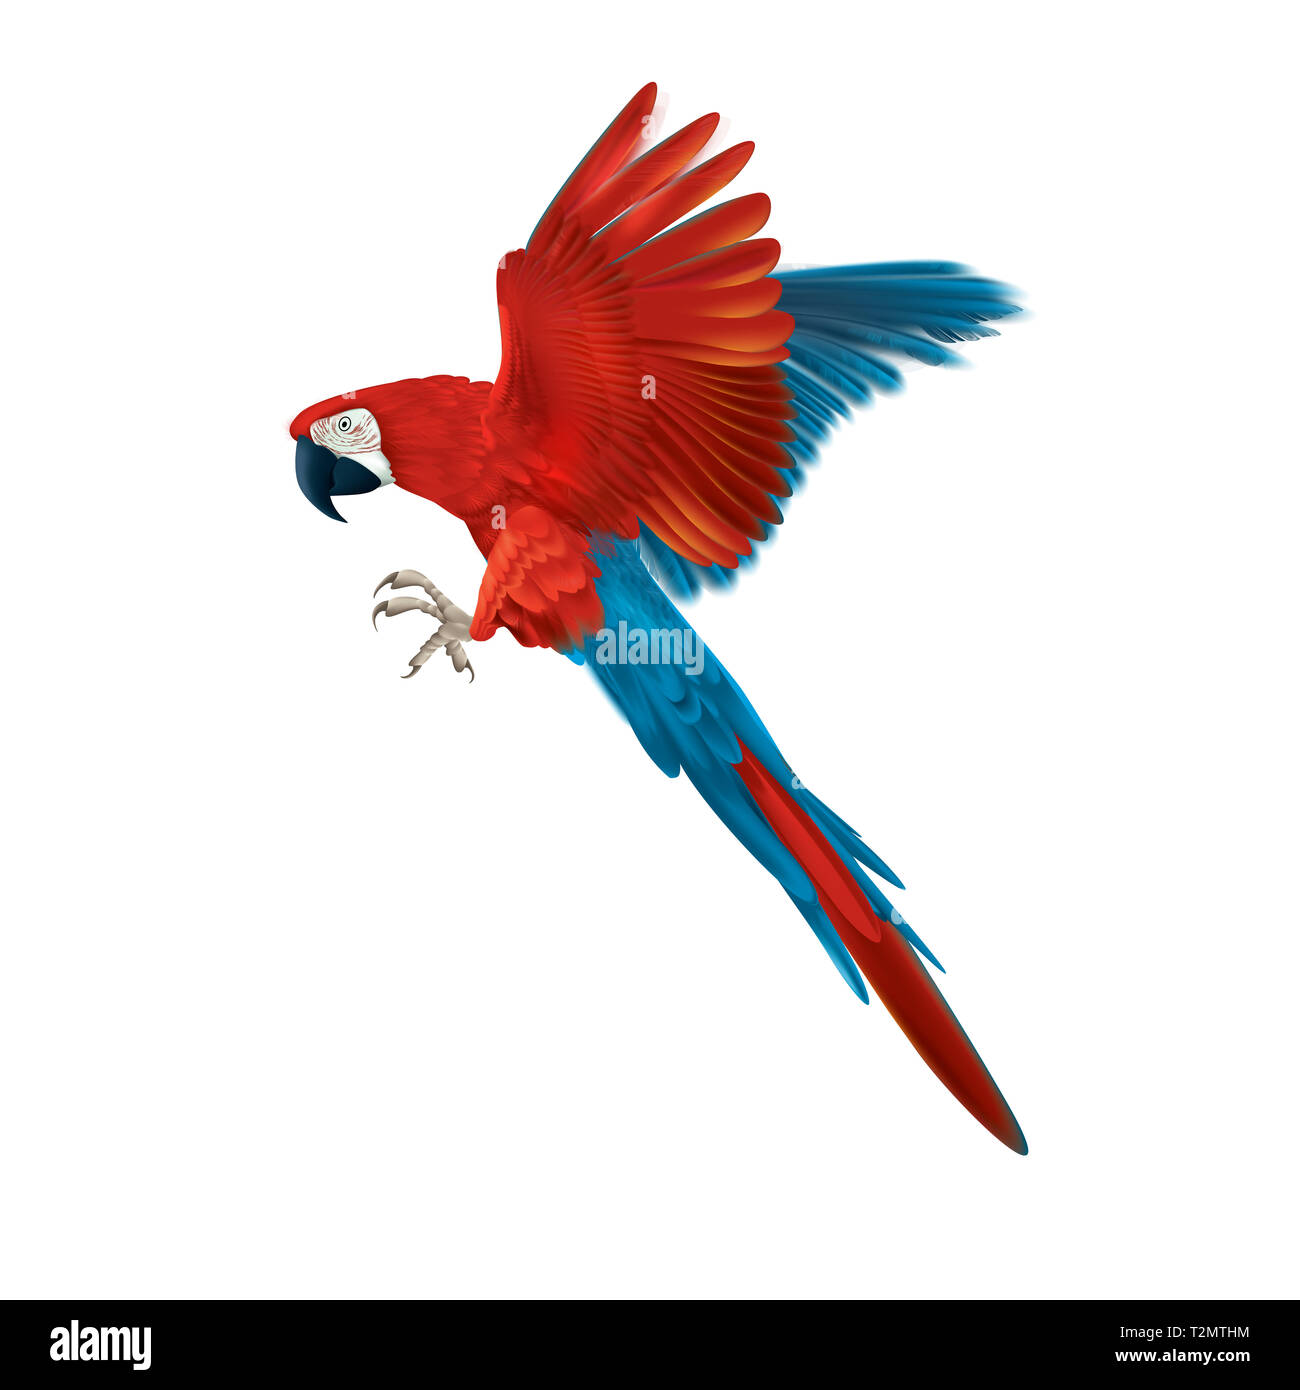 Colorati pappagalli macaw - isolato multicolore flying bird - realistica e dettagliata illustrazione - design simmetrico Foto Stock